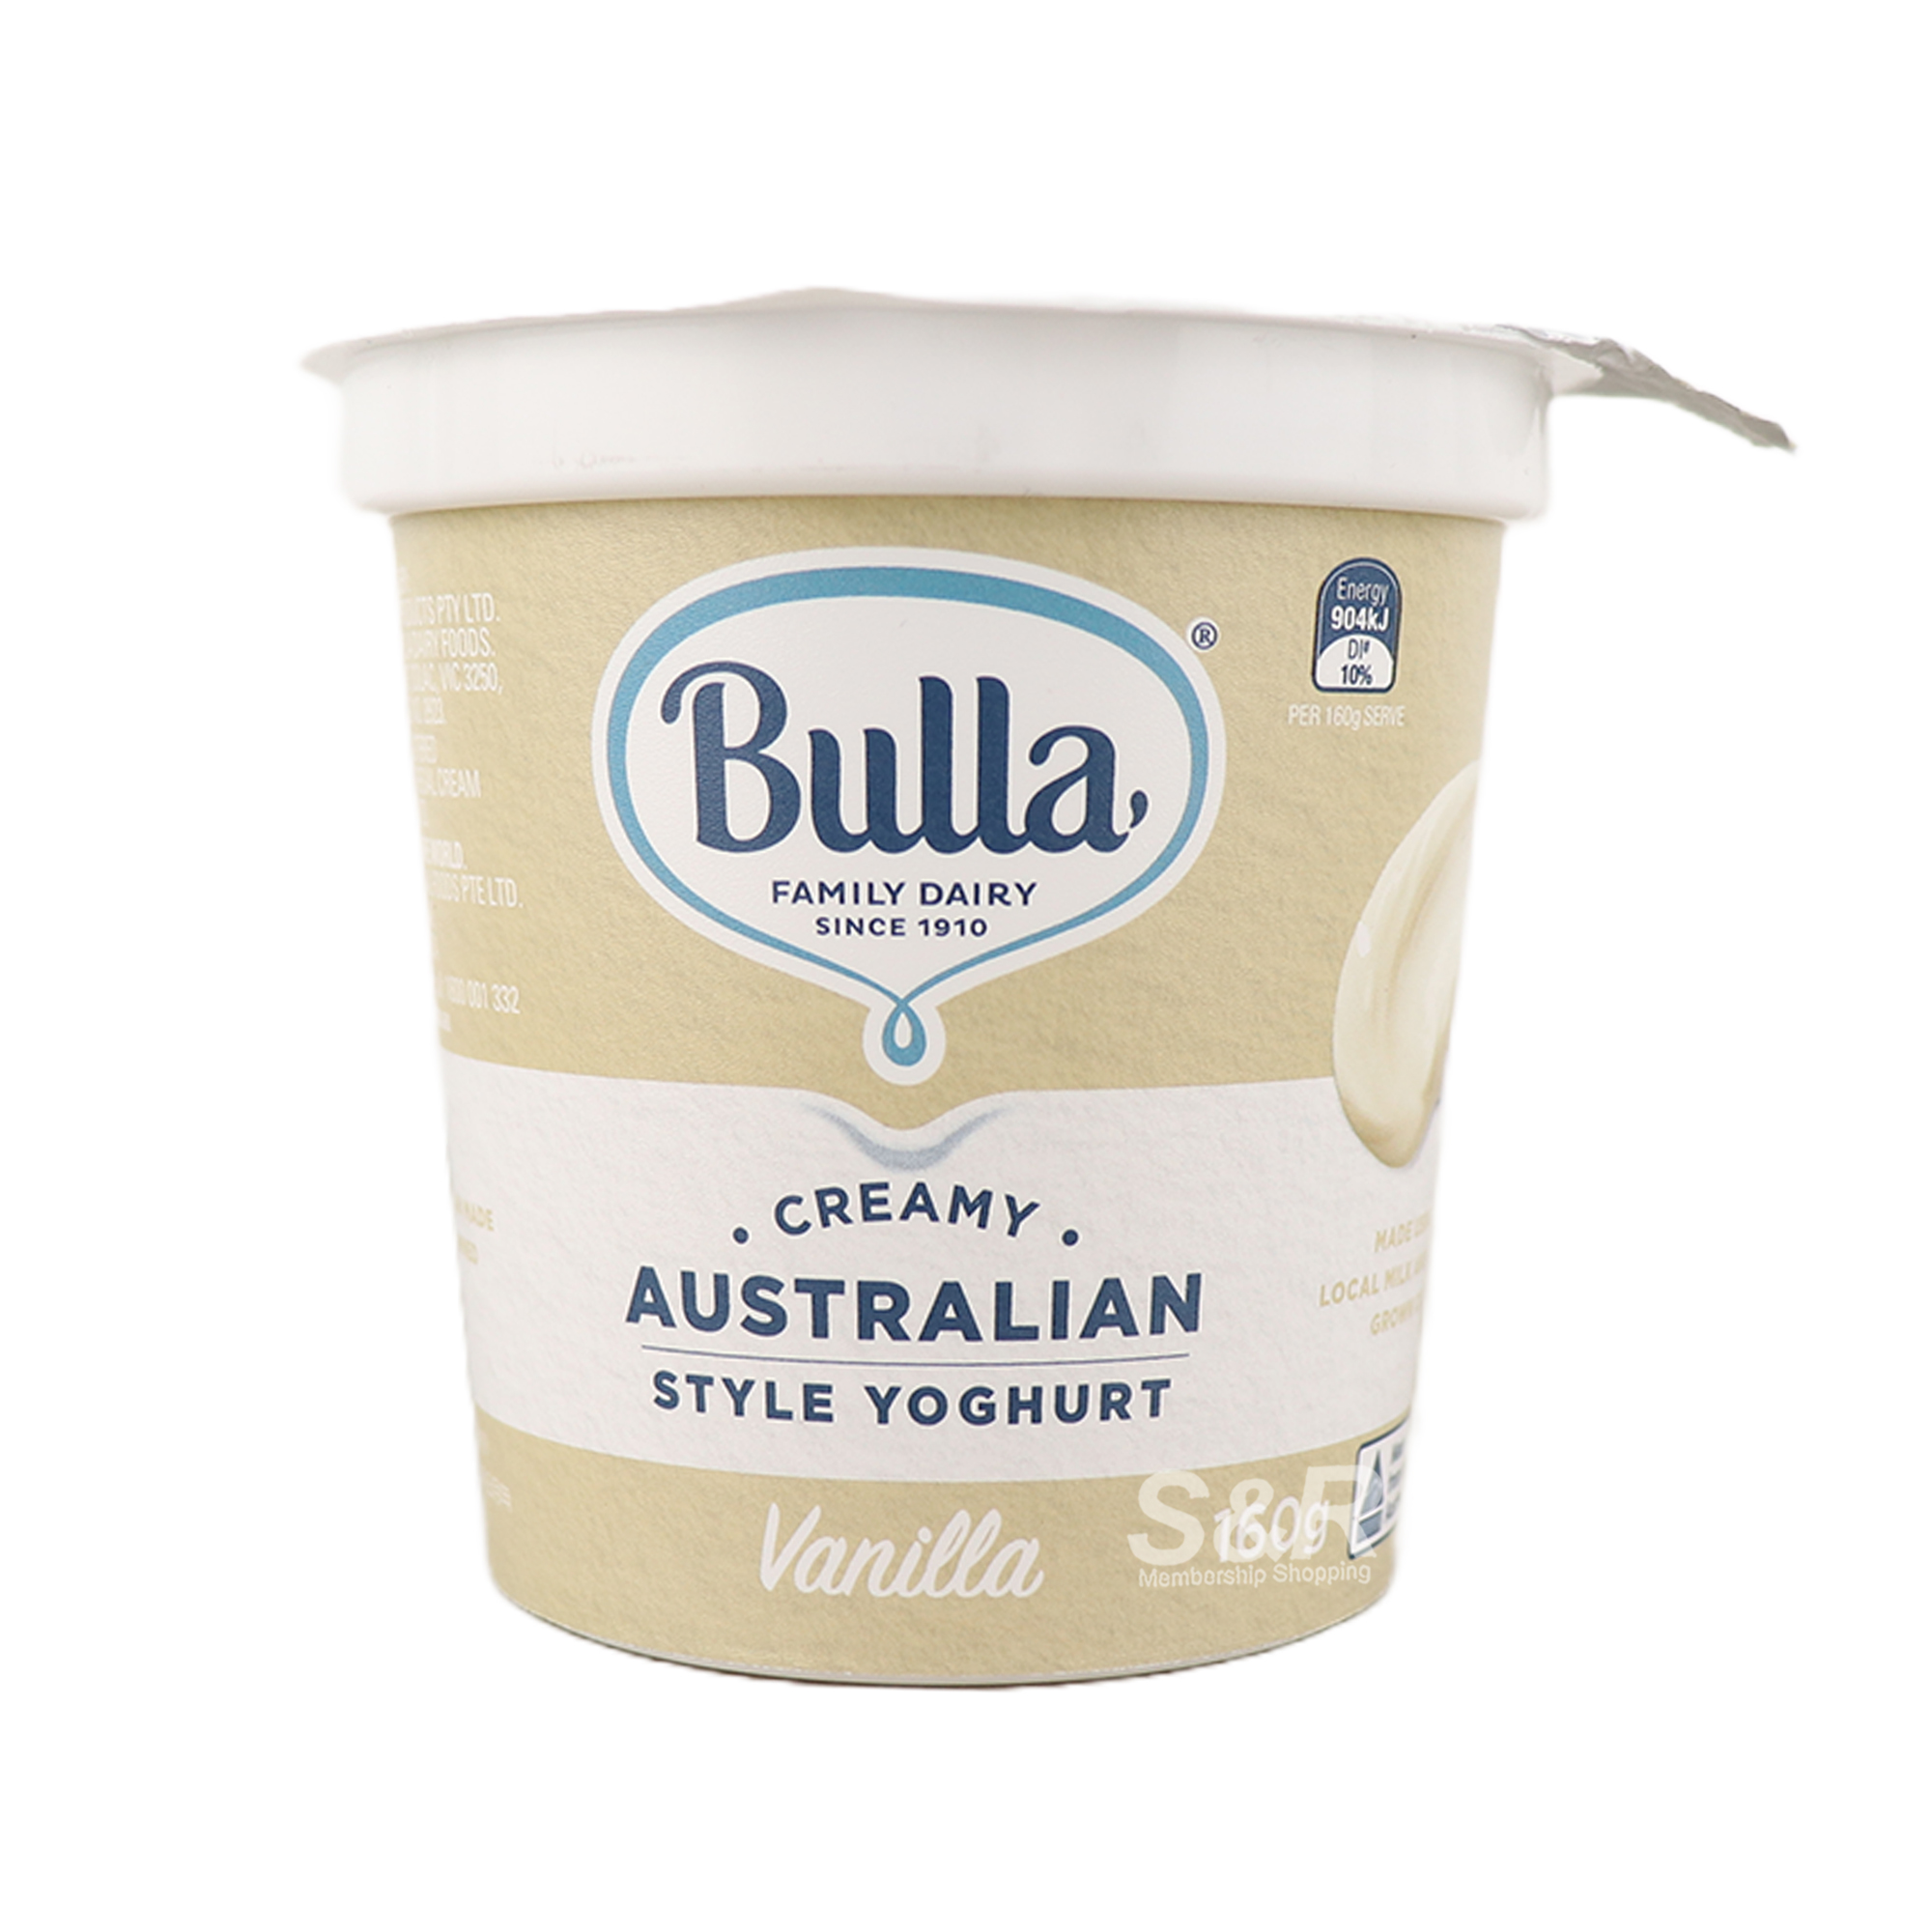 Bulla Creamy Australian Style Yoghurt Vanilla 160g